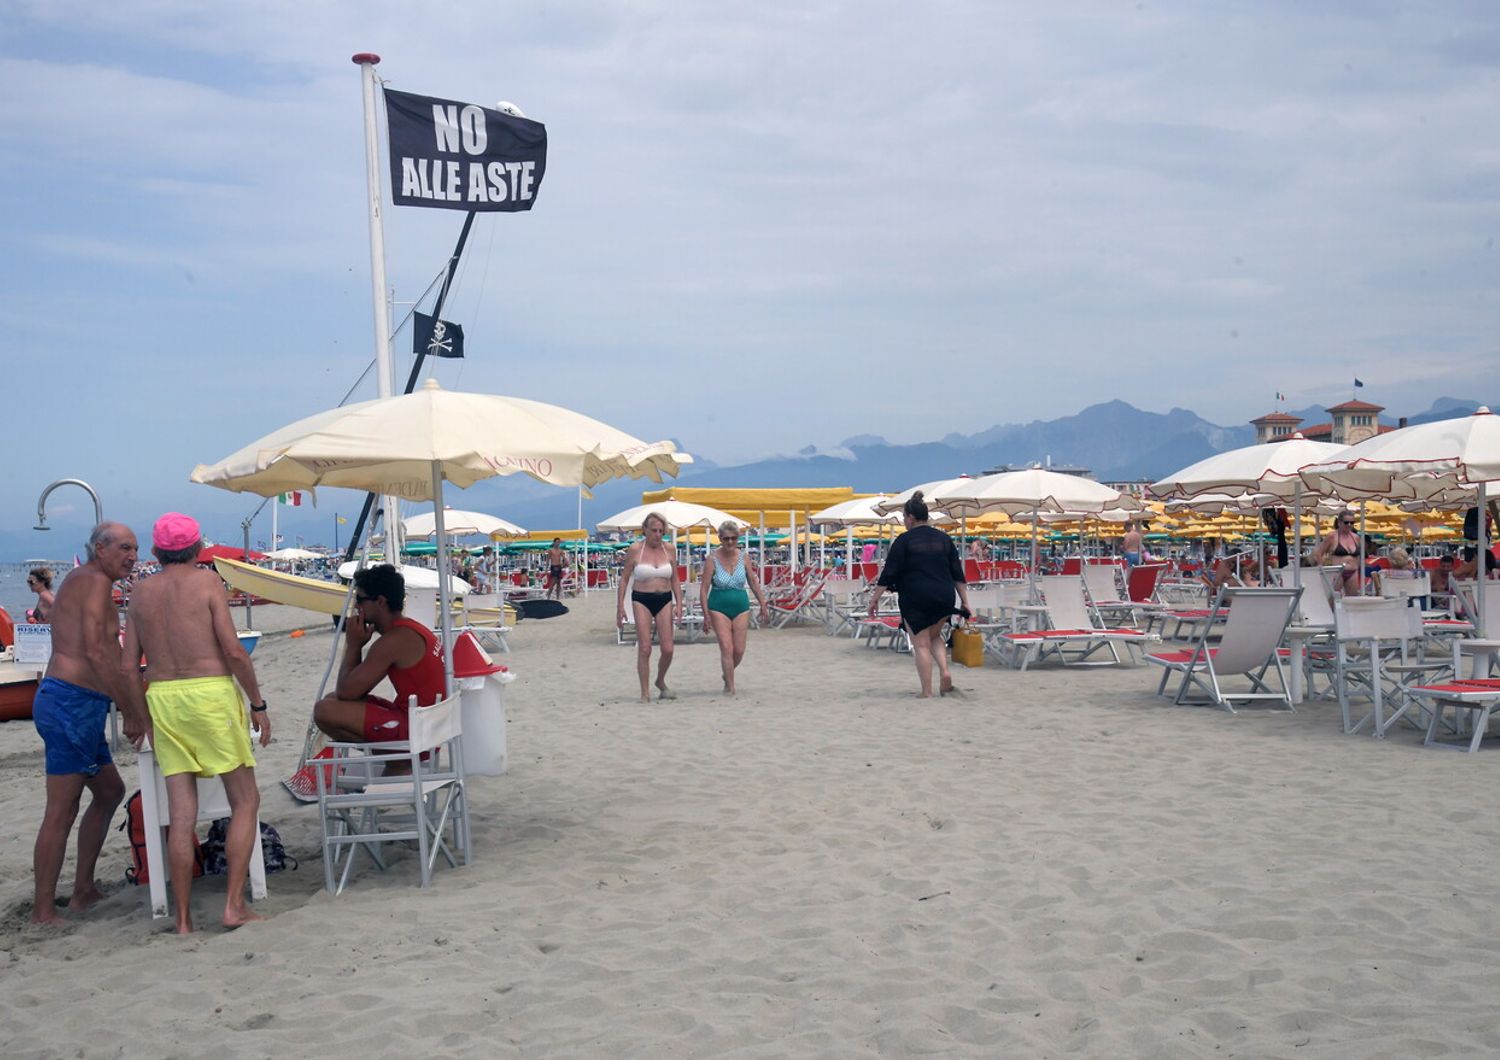 Una spiaggia con una bandiera che esprime la protesta dei balneari